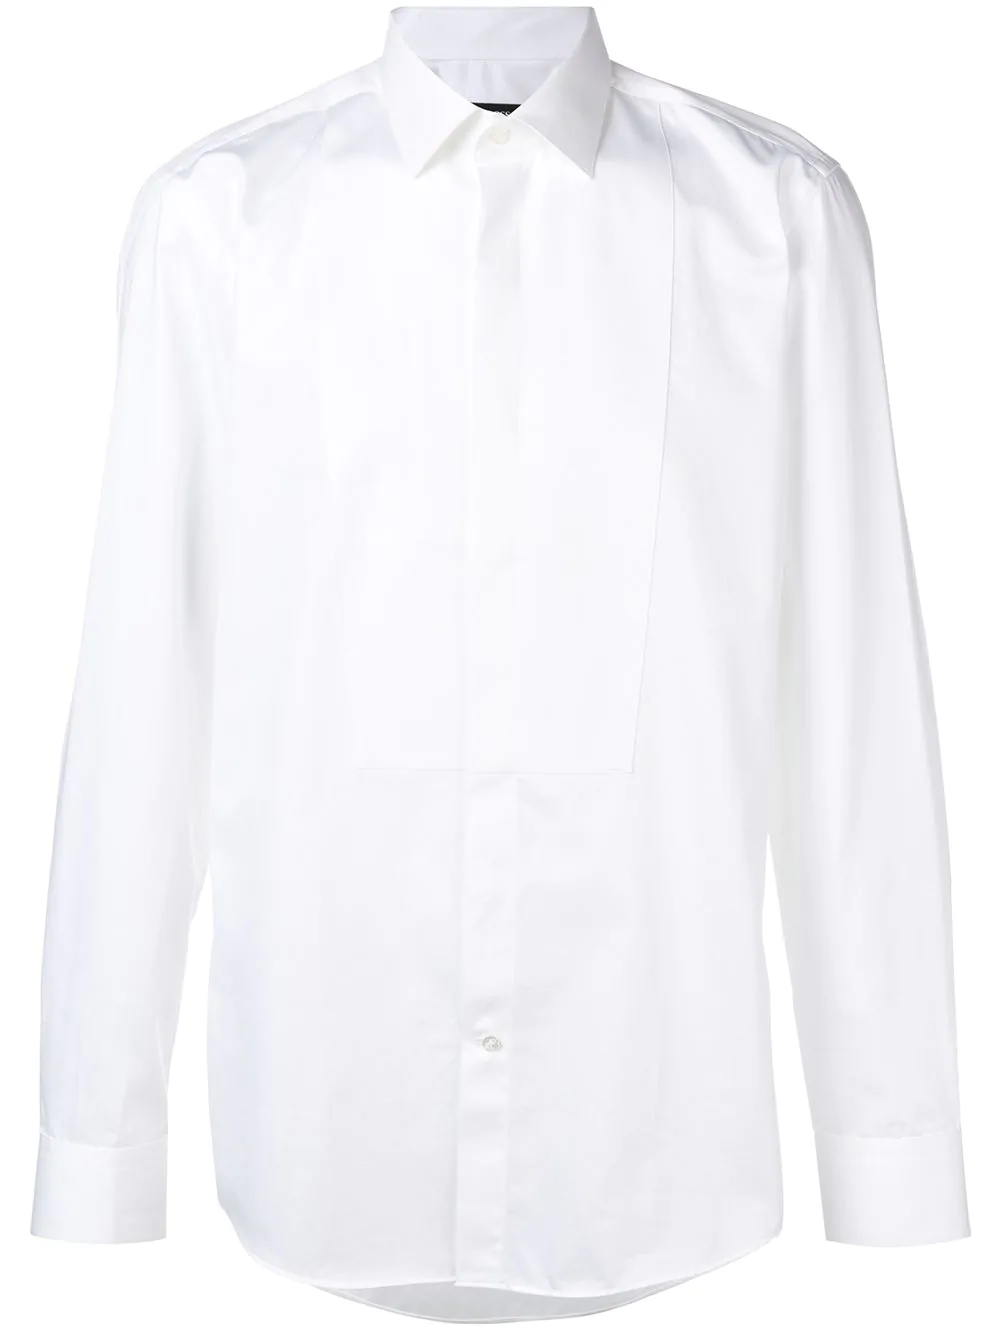 Boss Hugo Boss Tuxedo Shirt - White | ModeSens